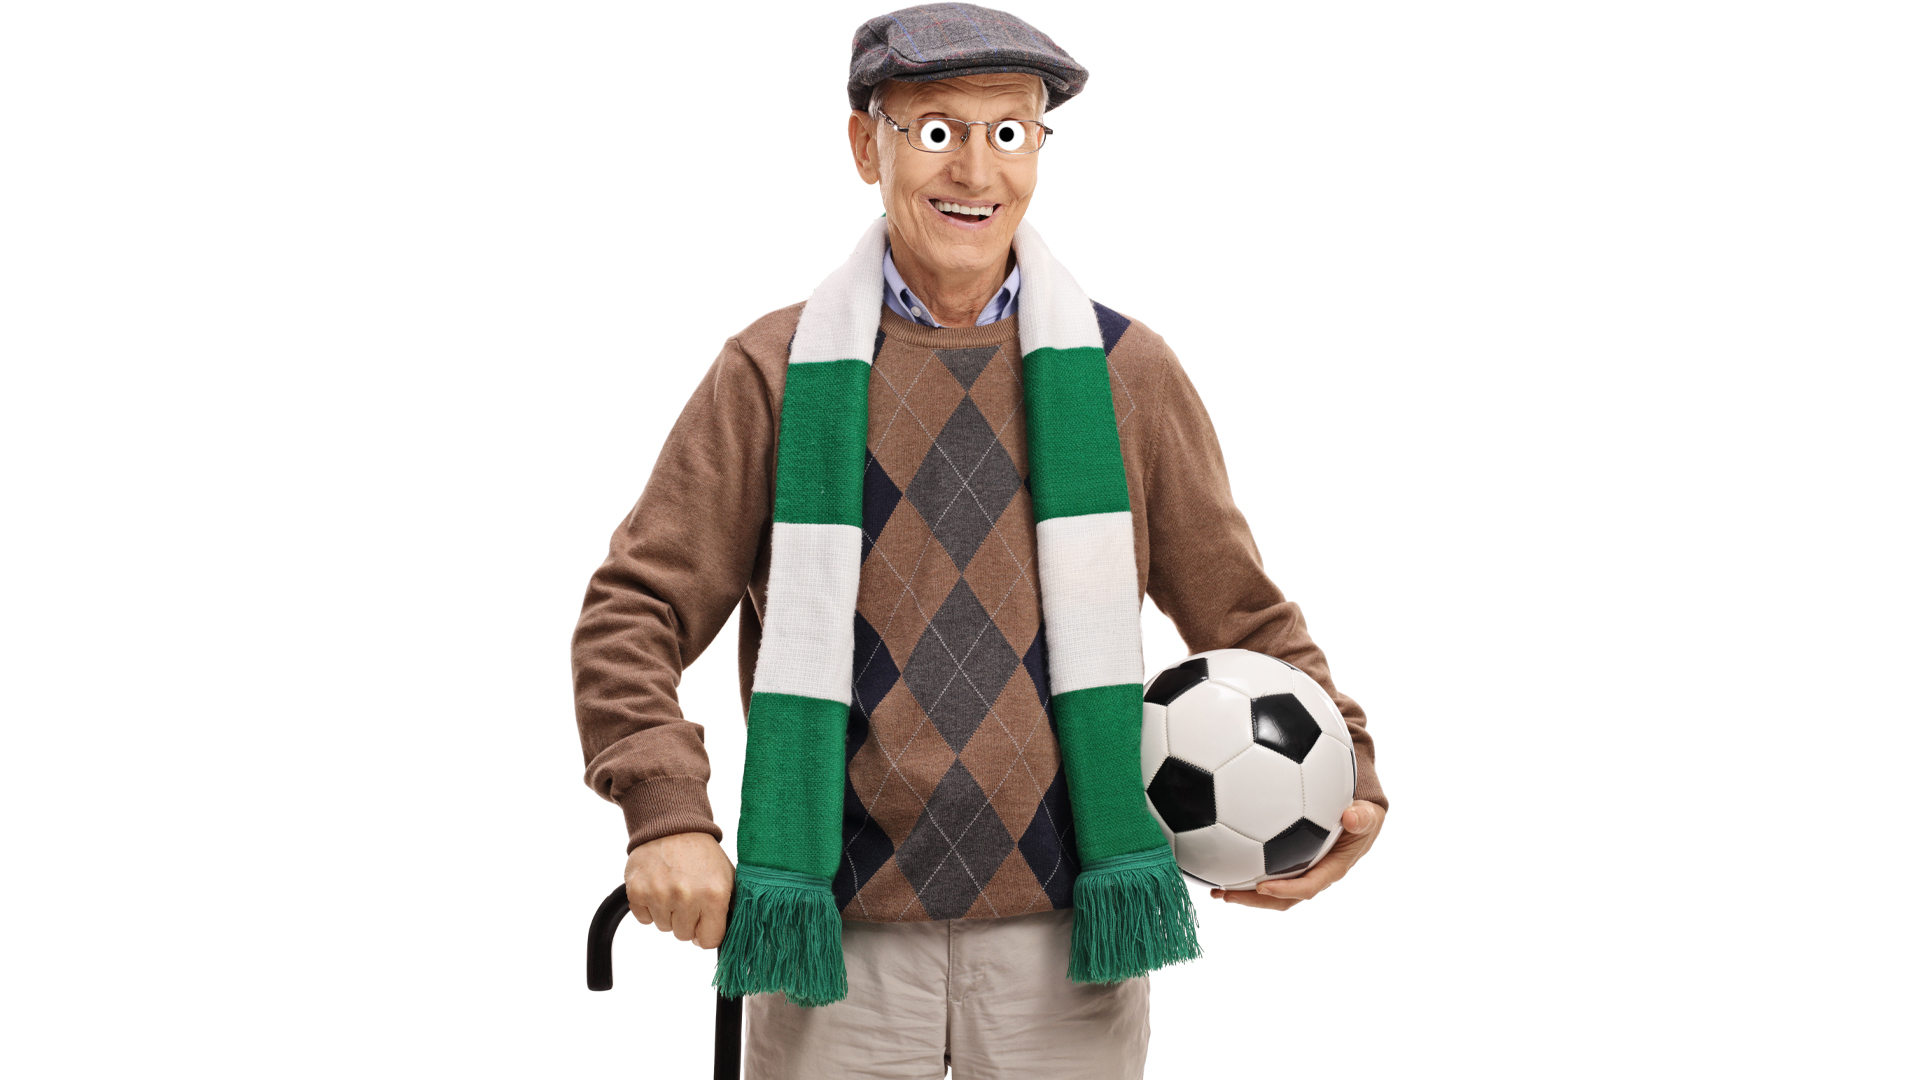 An elderly football fan